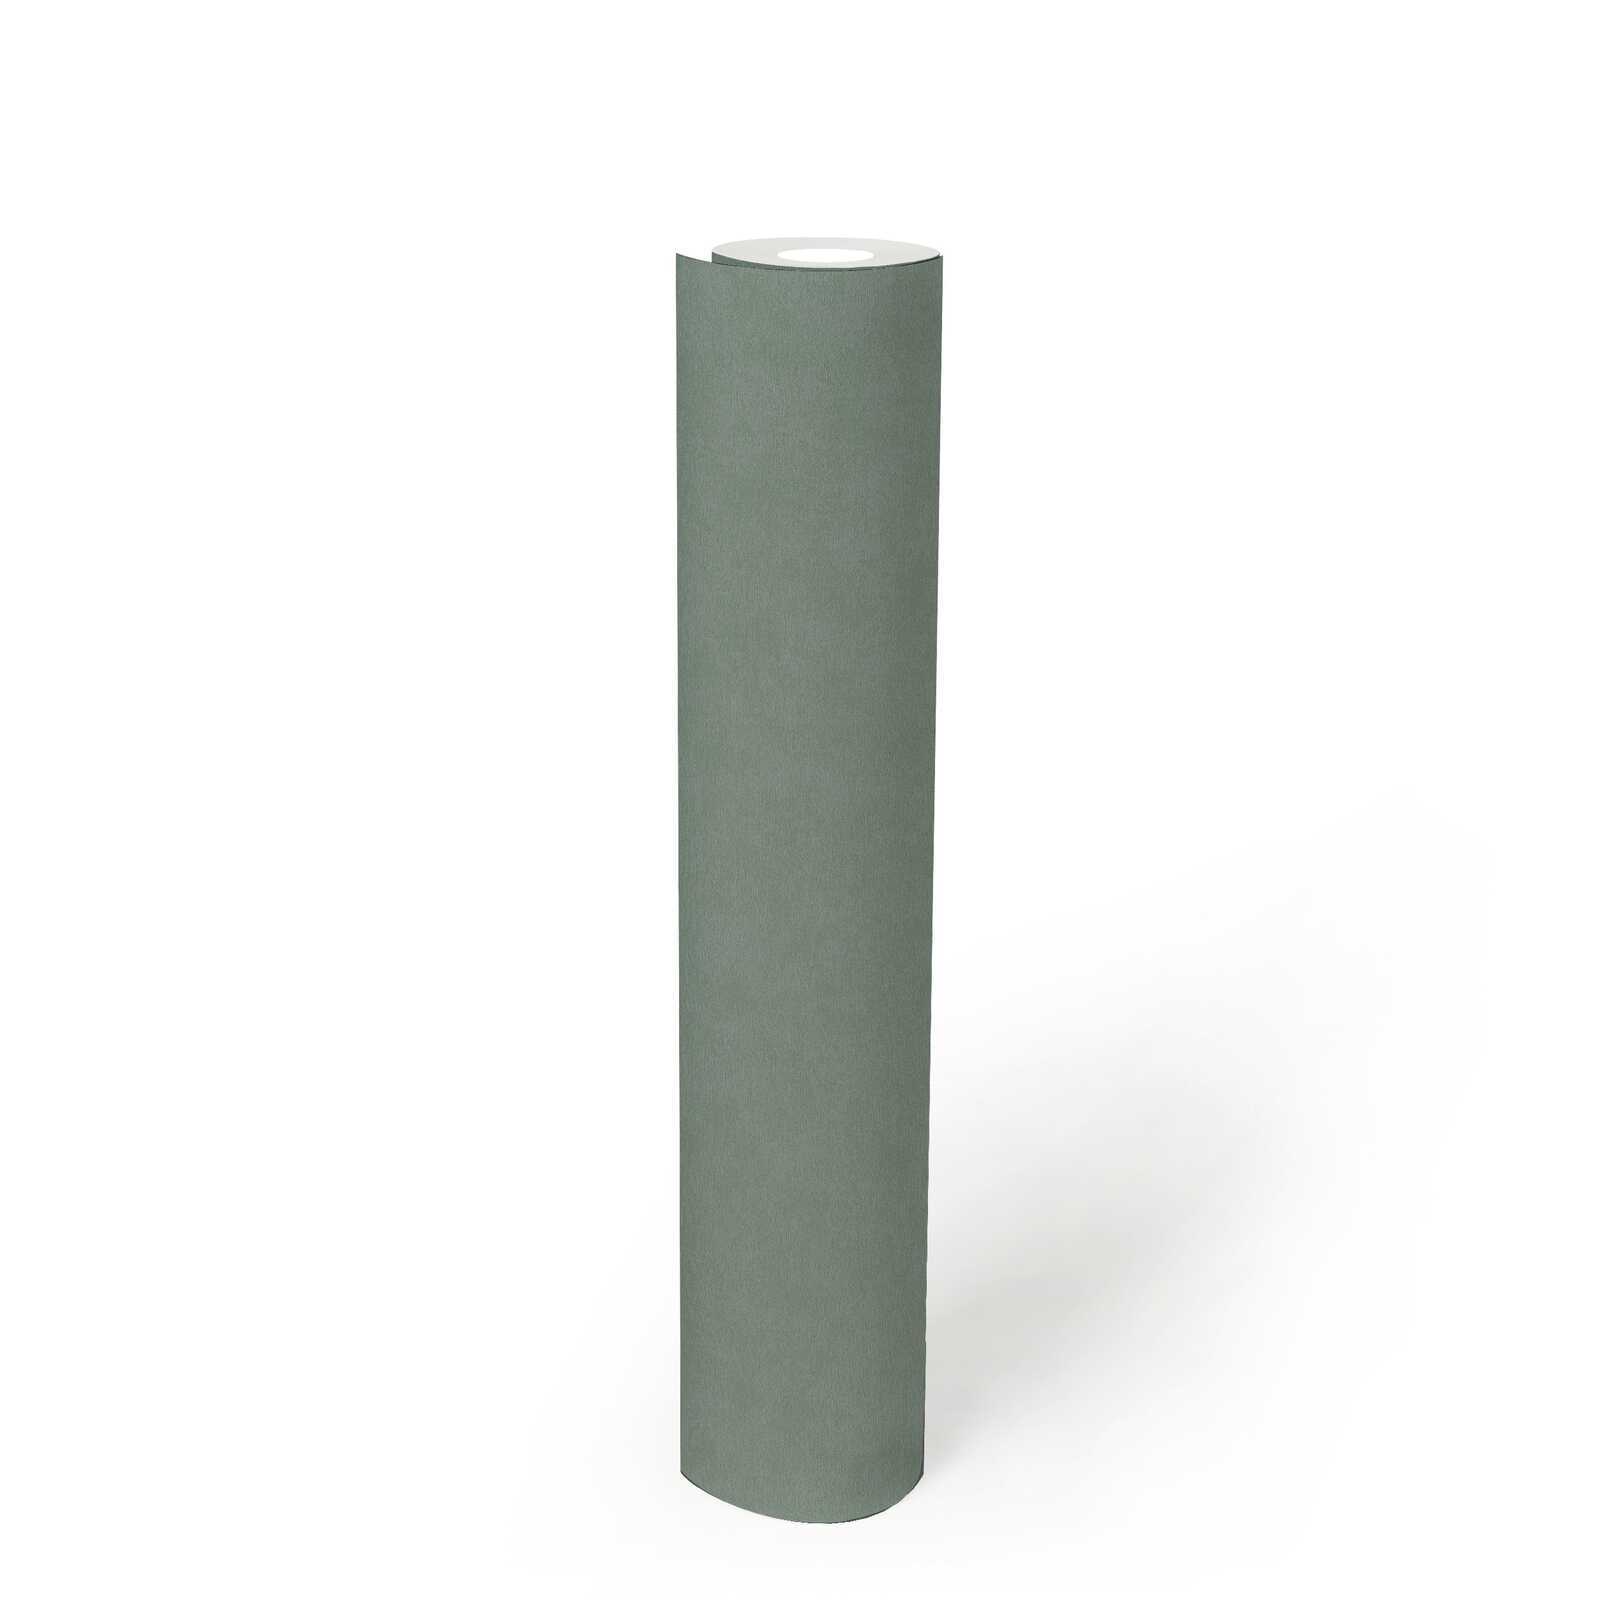             Einfarbige Vliestapete mit sanfter Struktur – Grün
        